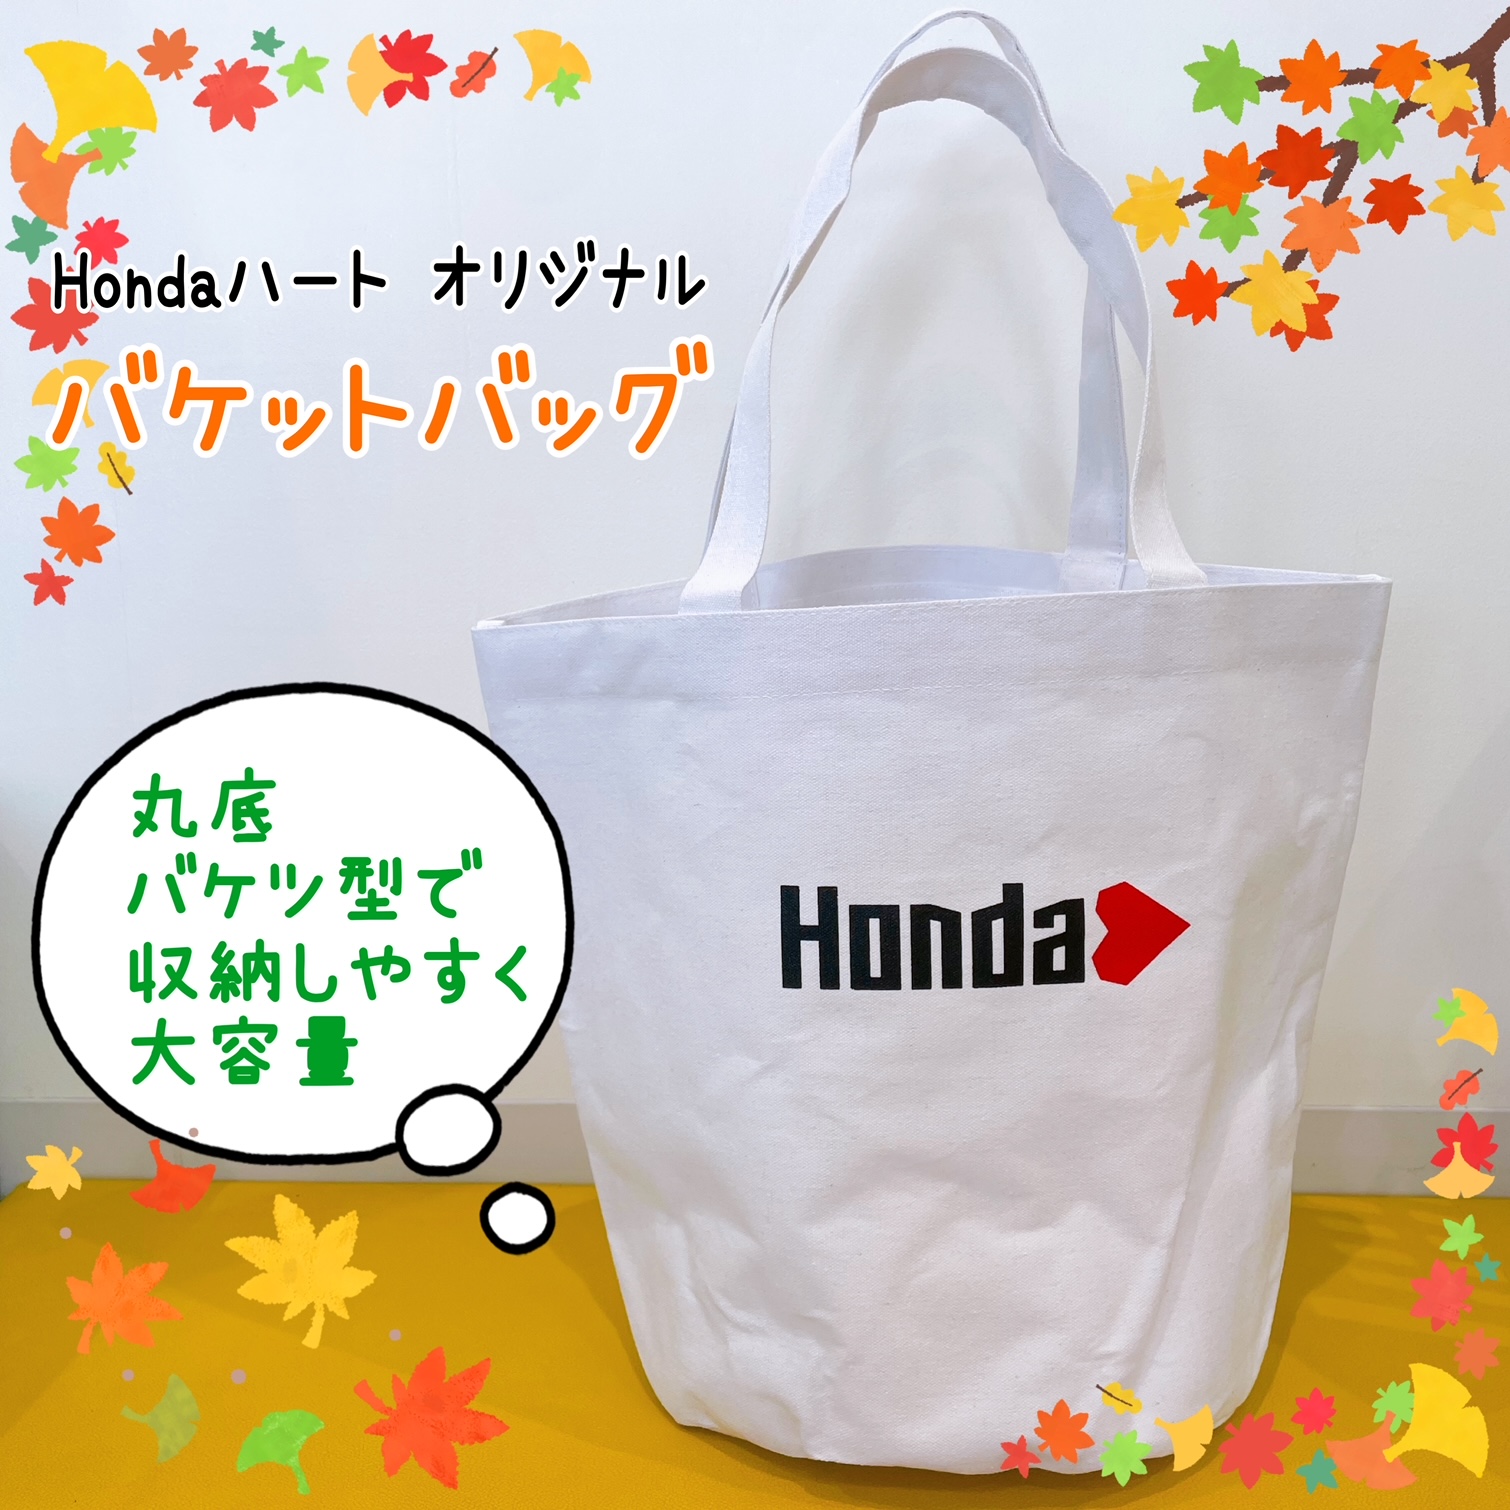 HONDAハート オリジナル バケットバッグ-